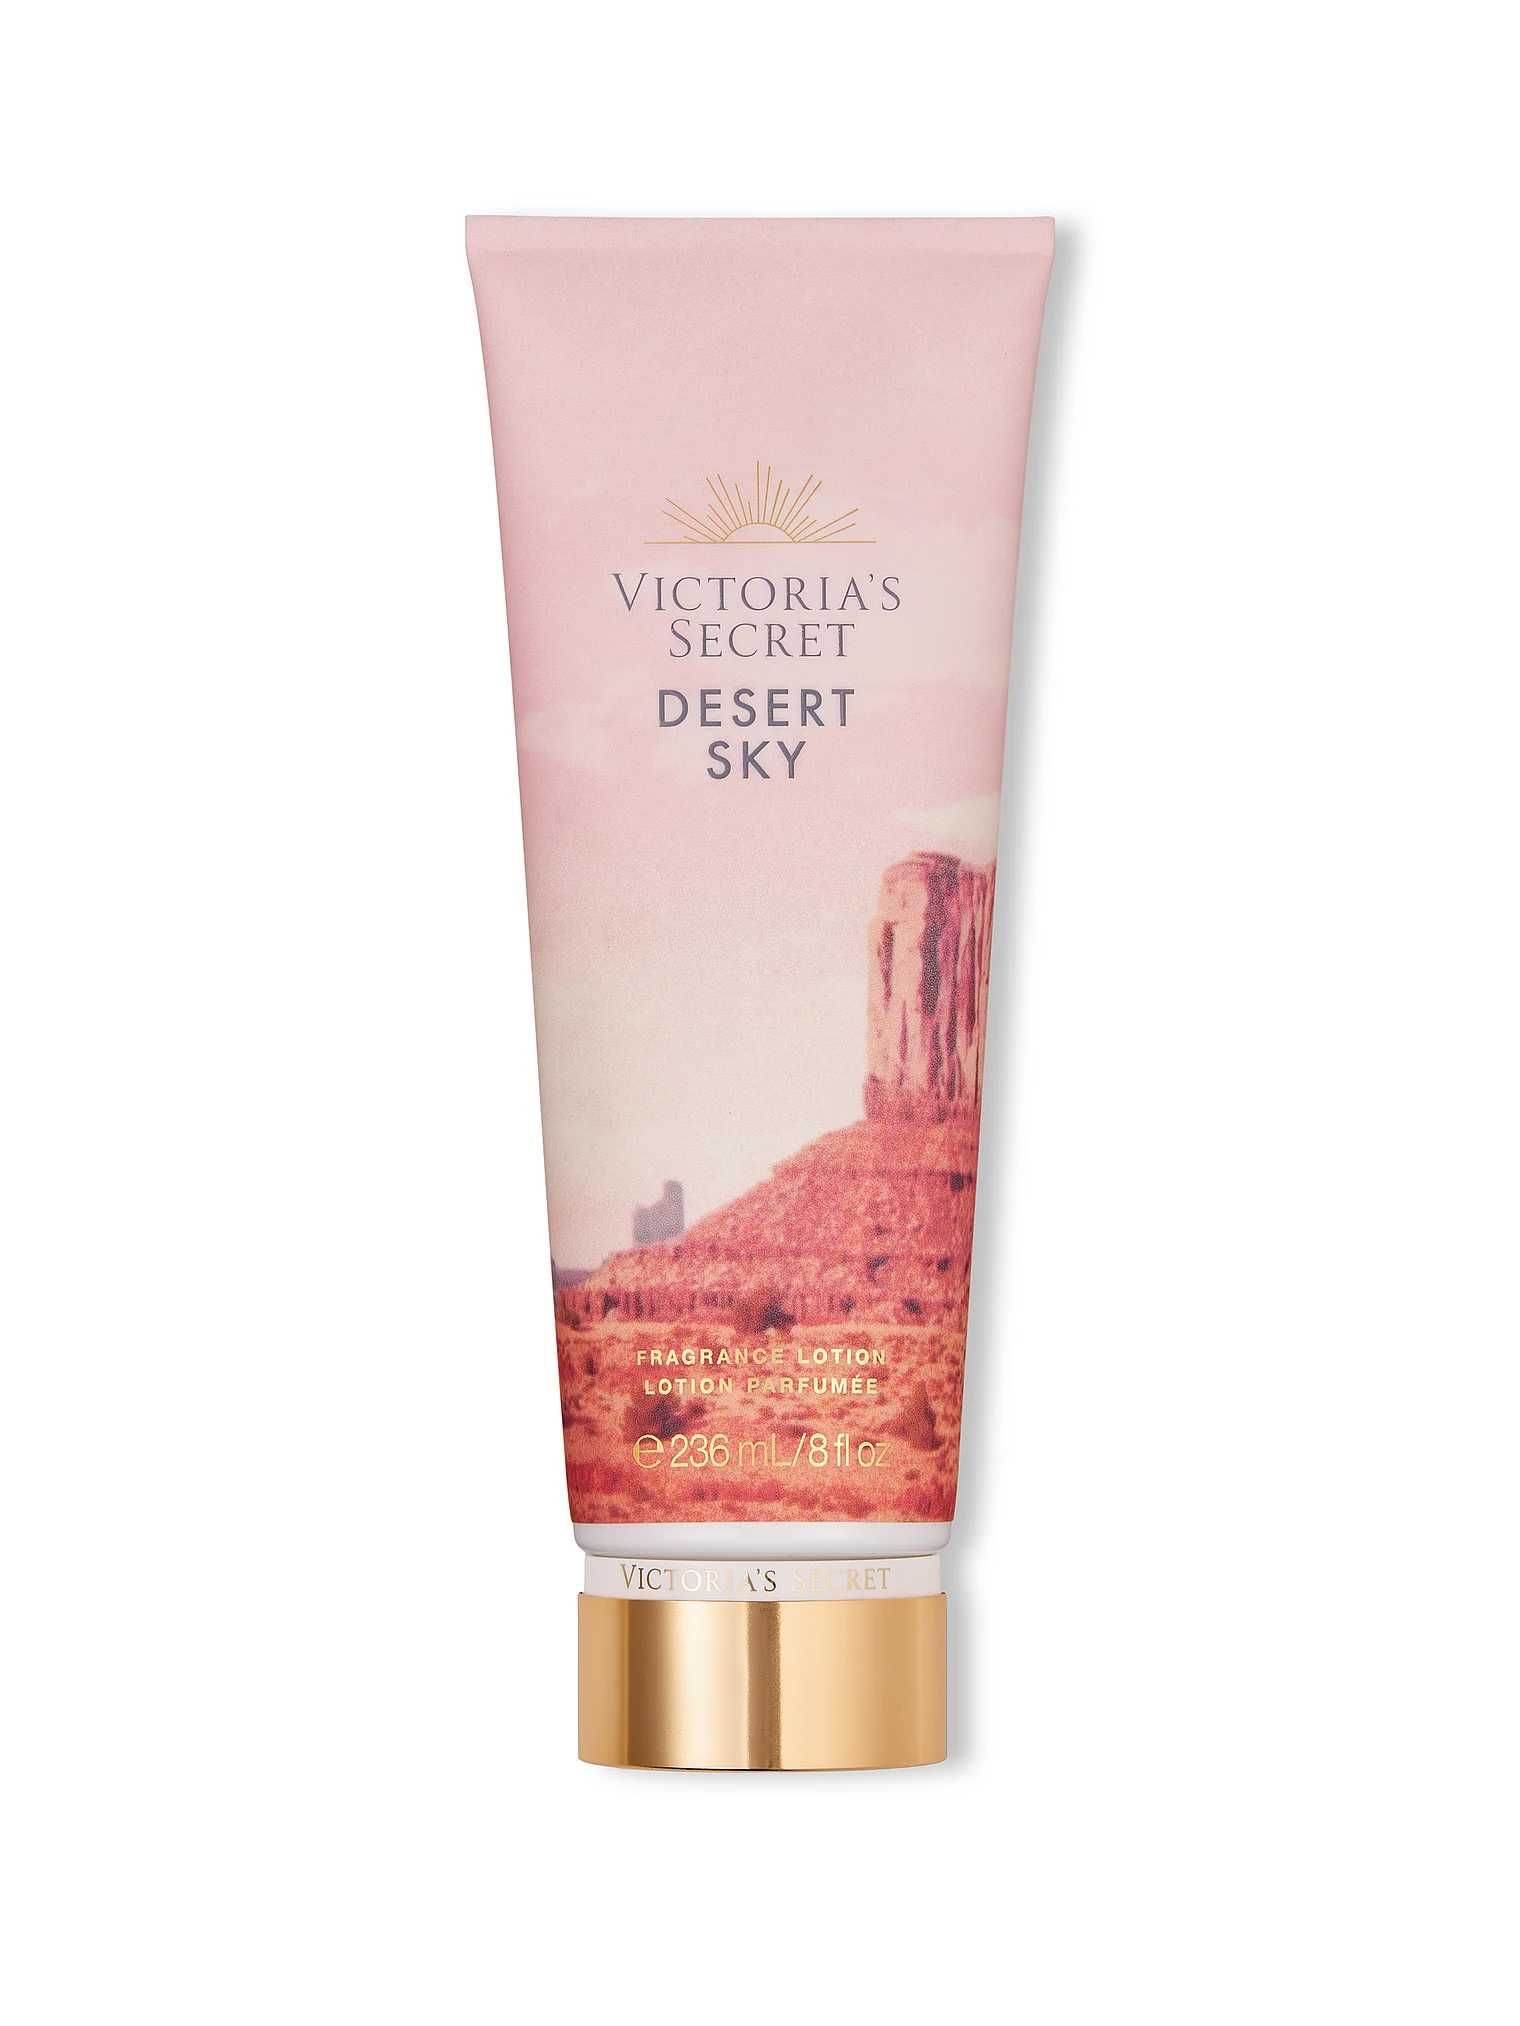 Victoria*s Secret Обмежений випуск ароматного лосьйону Desert Wonders